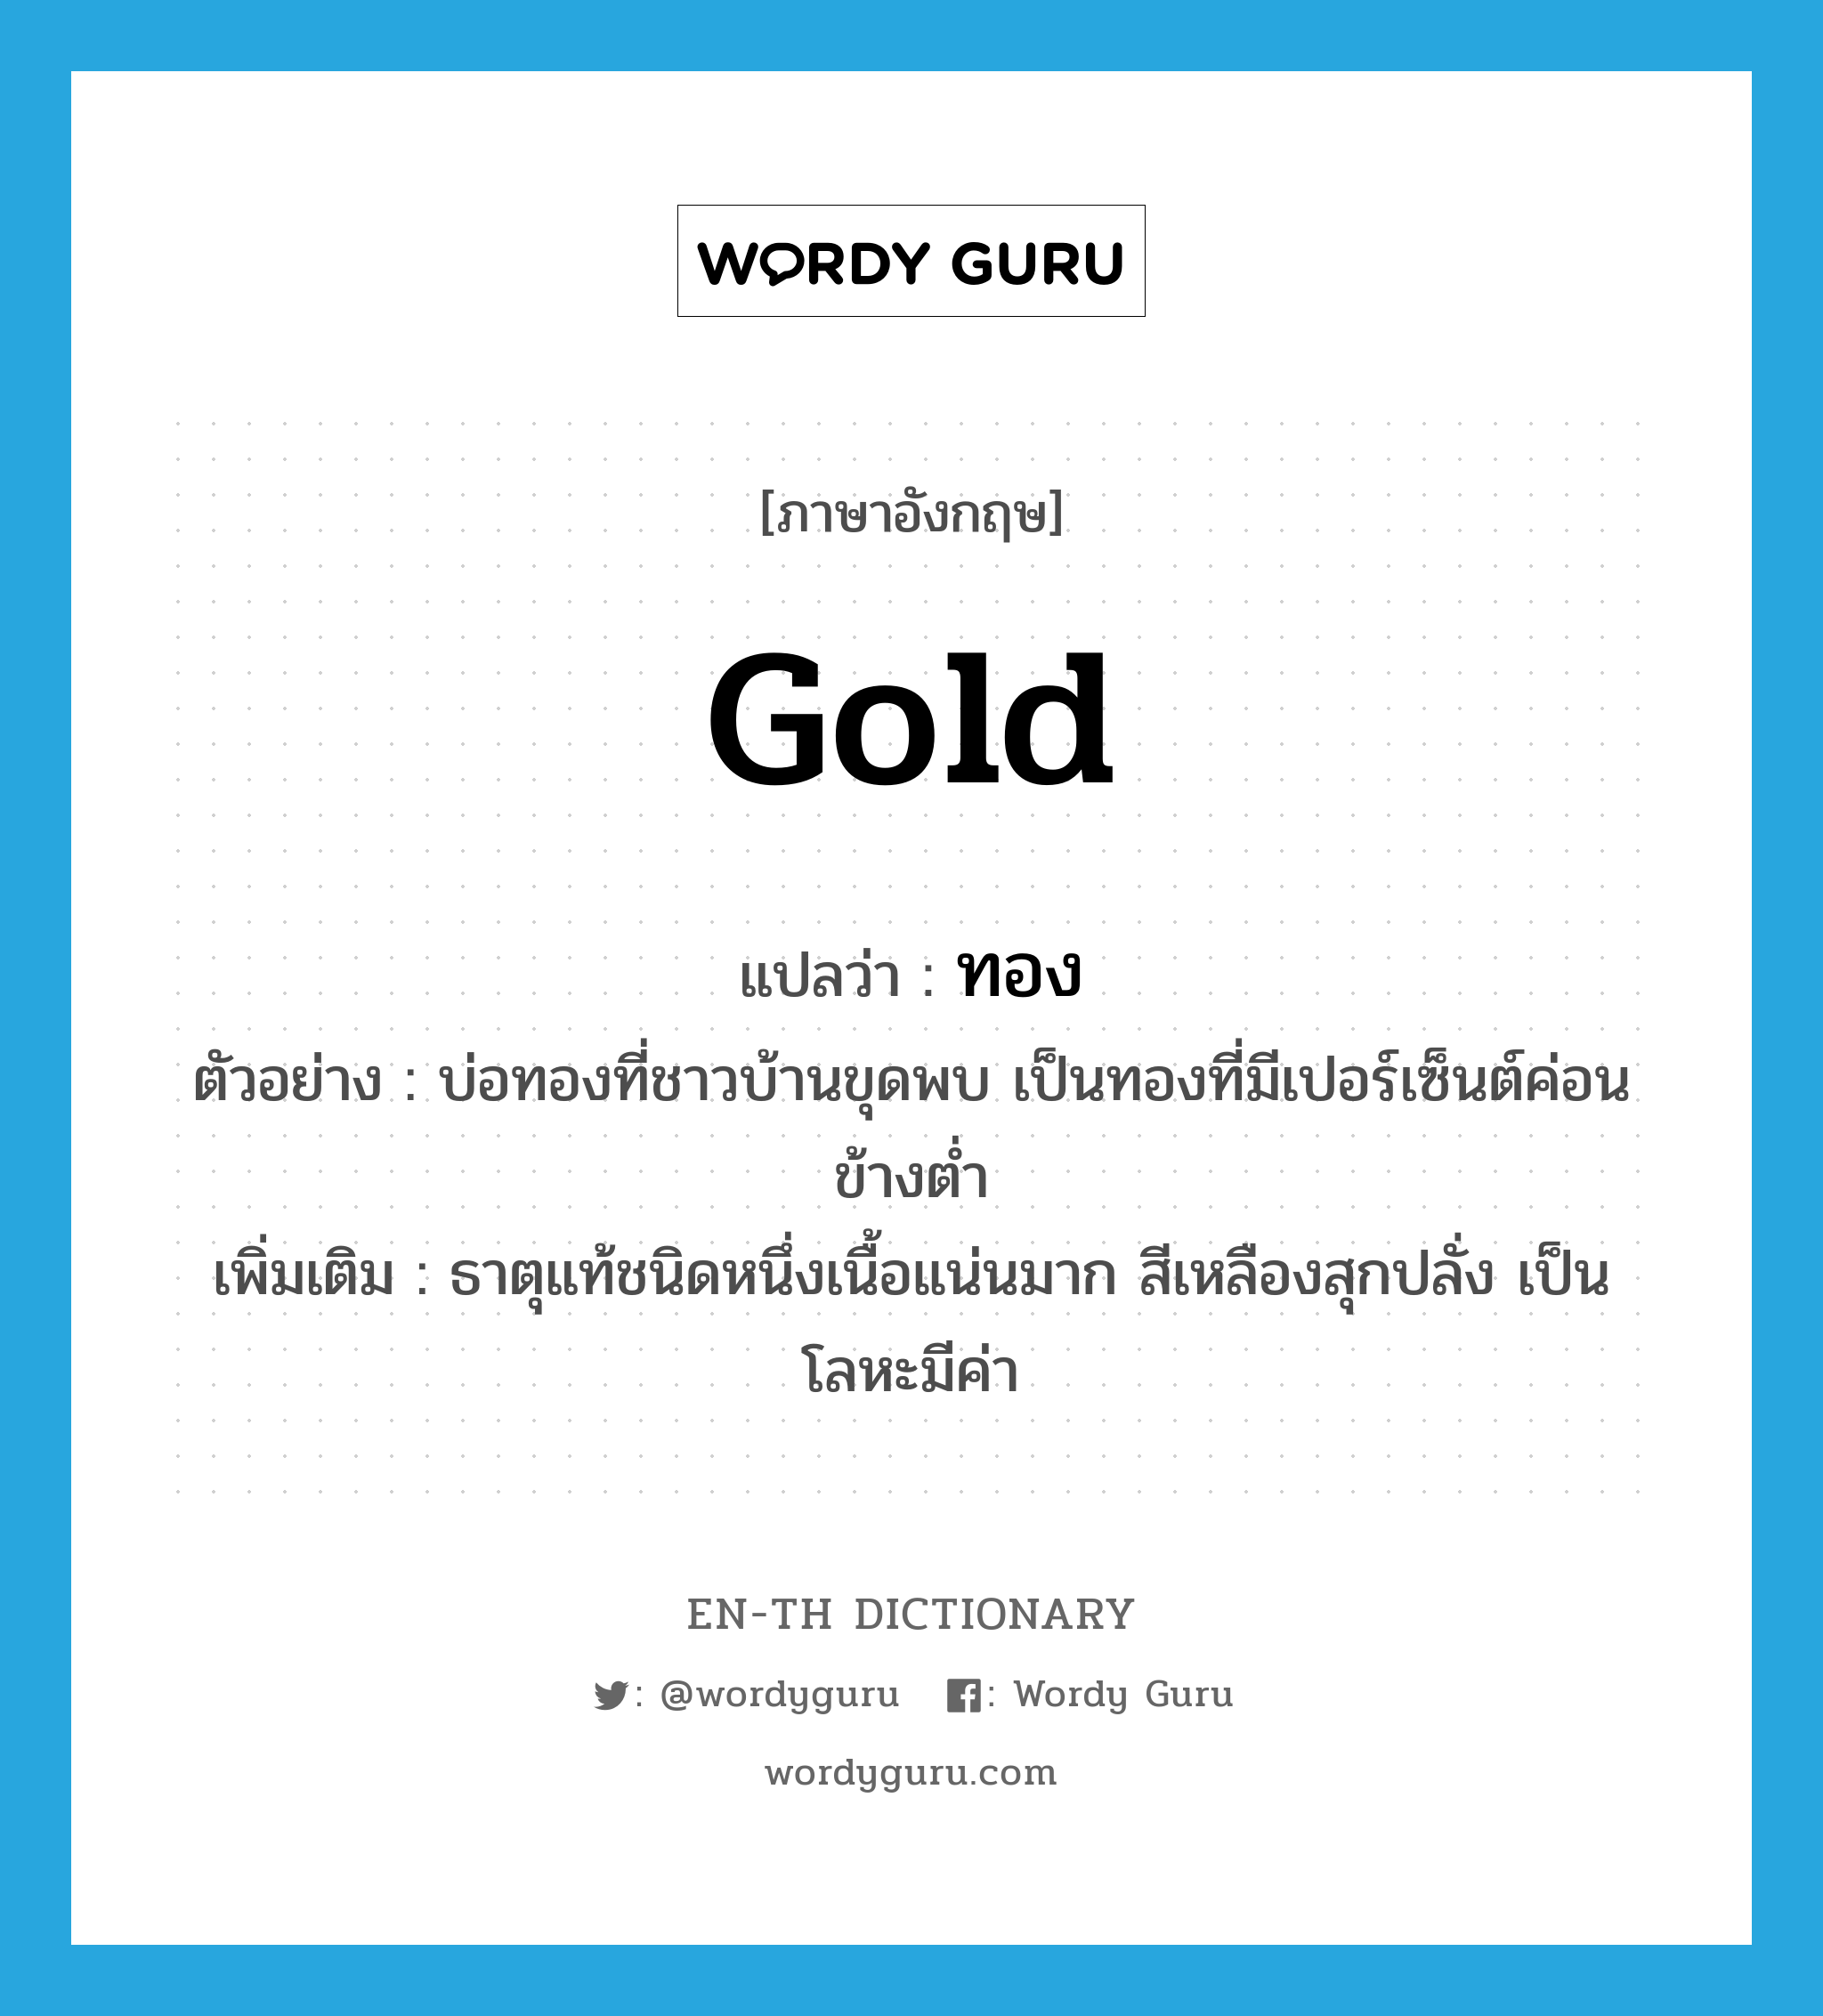 gold แปลว่า?, คำศัพท์ภาษาอังกฤษ gold แปลว่า ทอง ประเภท N ตัวอย่าง บ่อทองที่ชาวบ้านขุดพบ เป็นทองที่มีเปอร์เซ็นต์ค่อนข้างต่ำ เพิ่มเติม ธาตุแท้ชนิดหนึ่งเนื้อแน่นมาก สีเหลืองสุกปลั่ง เป็นโลหะมีค่า หมวด N